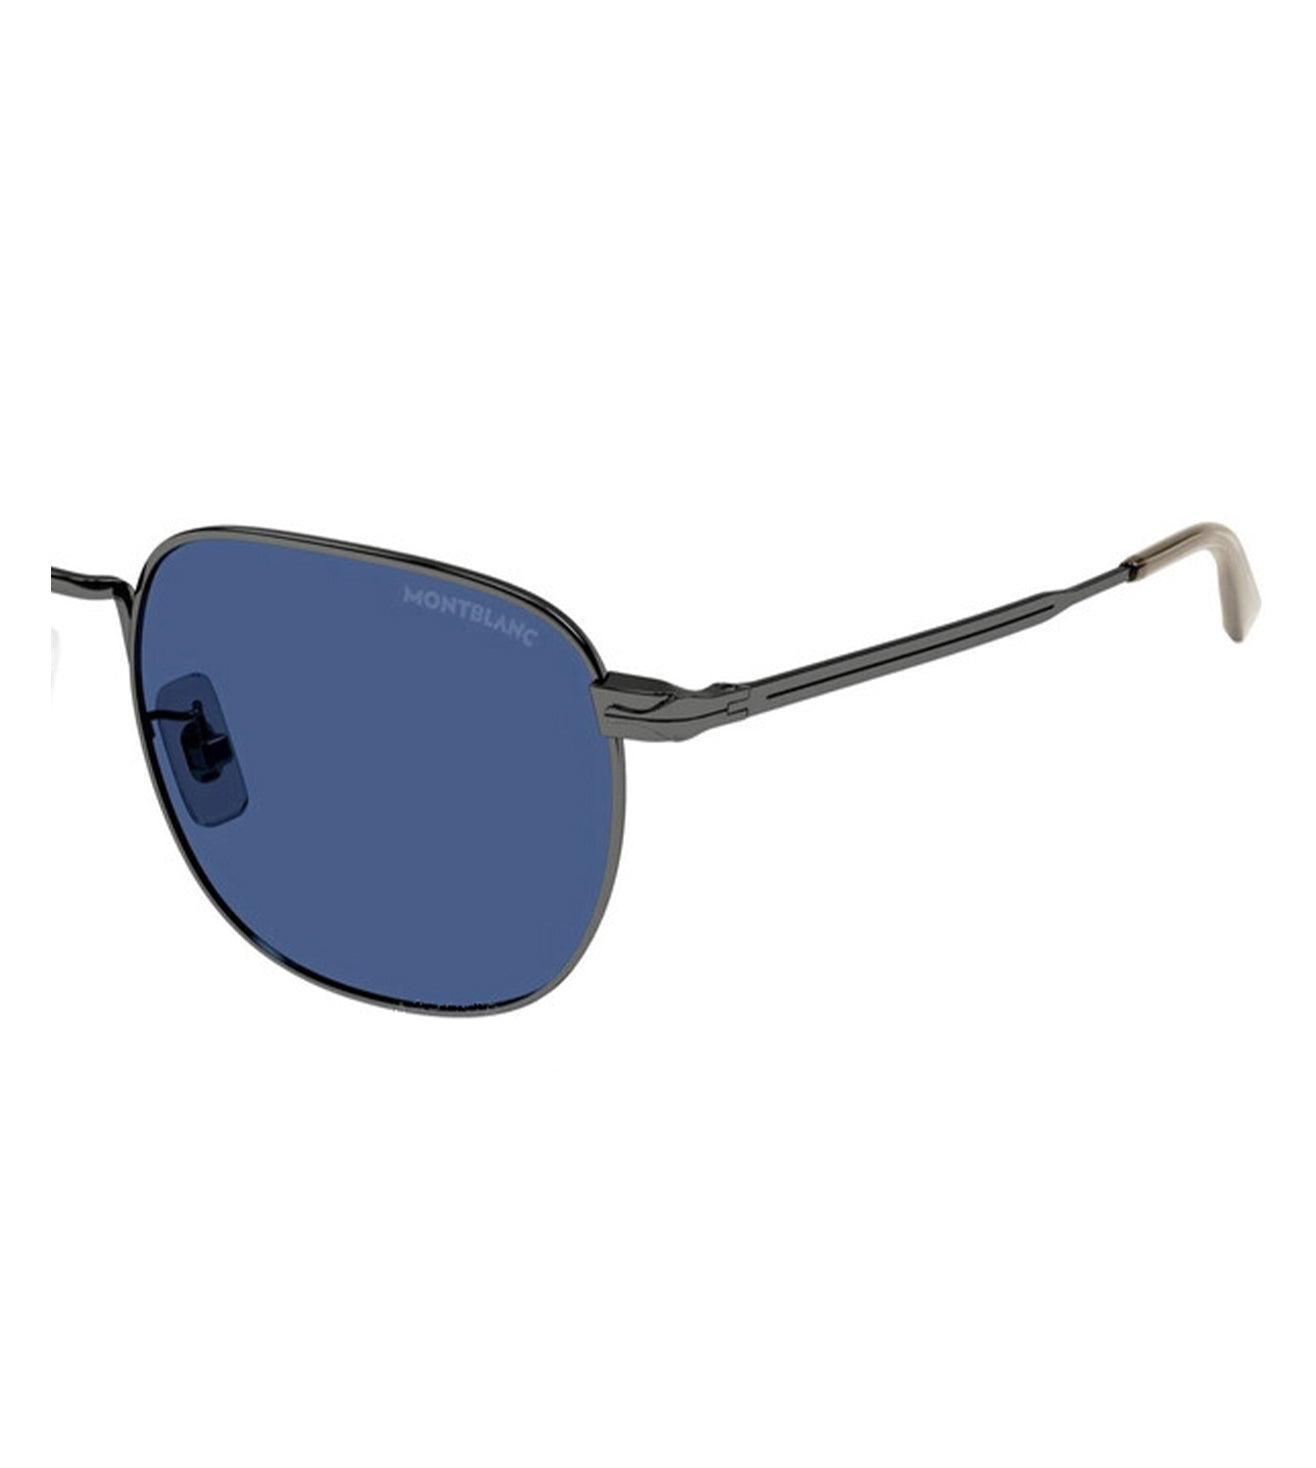 Montblanc Men's Blue Round Sunglasses